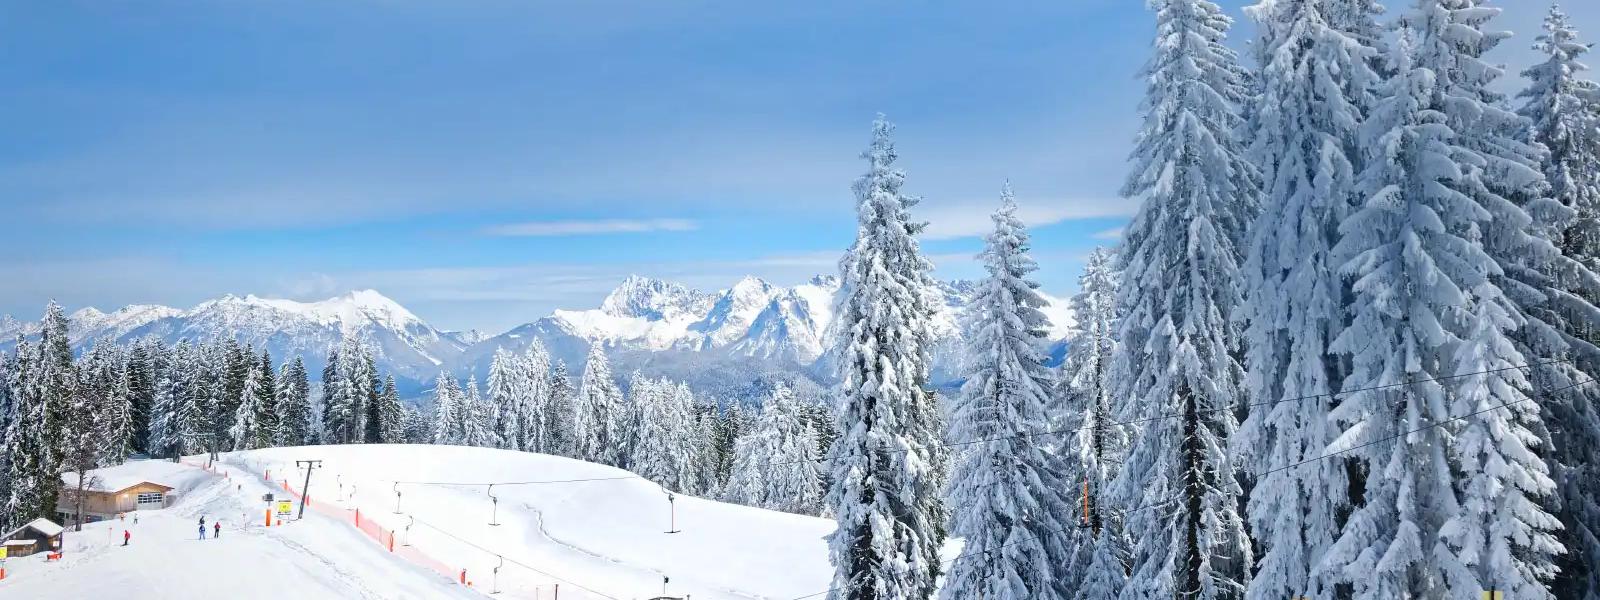 Skiurlaub - Ferienwohnung und Ferienhaus günstig buchen - e-domizil